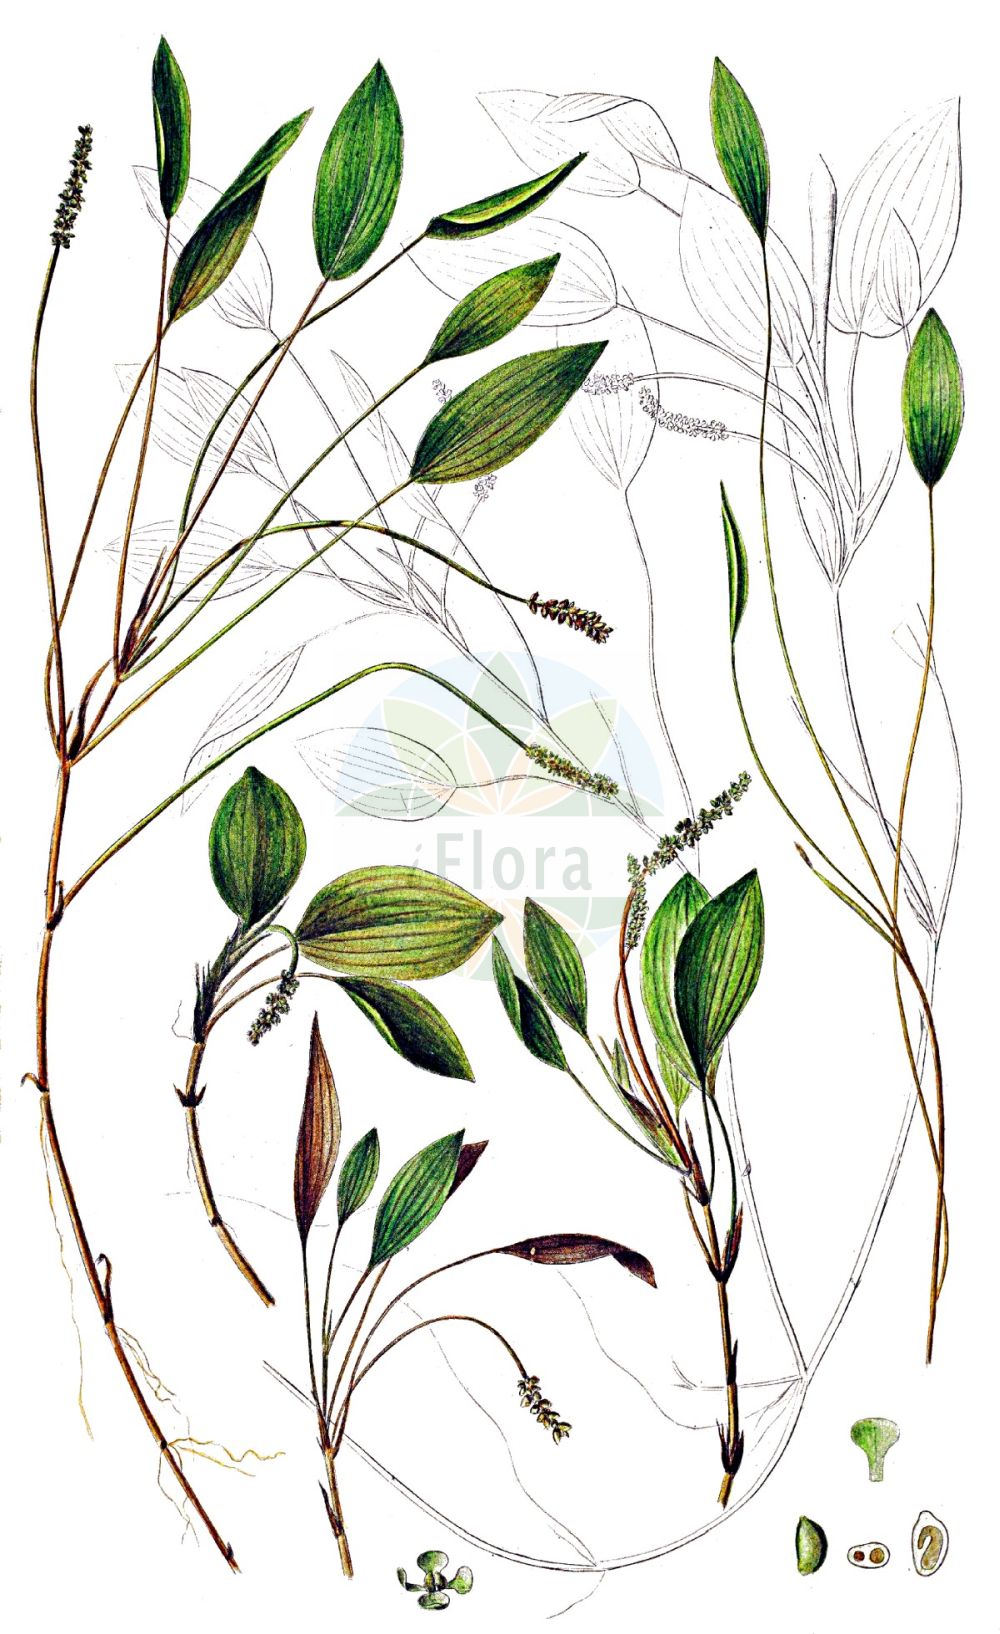 Historische Abbildung von Potamogeton polygonifolius (Knöterich-Laichkraut - Bog Pondweed). Das Bild zeigt Blatt, Bluete, Frucht und Same. ---- Historical Drawing of Potamogeton polygonifolius (Knöterich-Laichkraut - Bog Pondweed). The image is showing leaf, flower, fruit and seed.(Potamogeton polygonifolius,Knöterich-Laichkraut,Bog Pondweed,Potamogeton microcarpus,Potamogeton oblongus,Potamogeton polygonifolius,Knoeterich-Laichkraut,Bog Pondweed,Cinnamonspot Pondweed,Potamogeton,Laichkraut,Pondweed,Potamogetonaceae,Laichkrautgewächse,Pondweed family,Blatt,Bluete,Frucht,Same,leaf,flower,fruit,seed,Oeder (1761-1883))